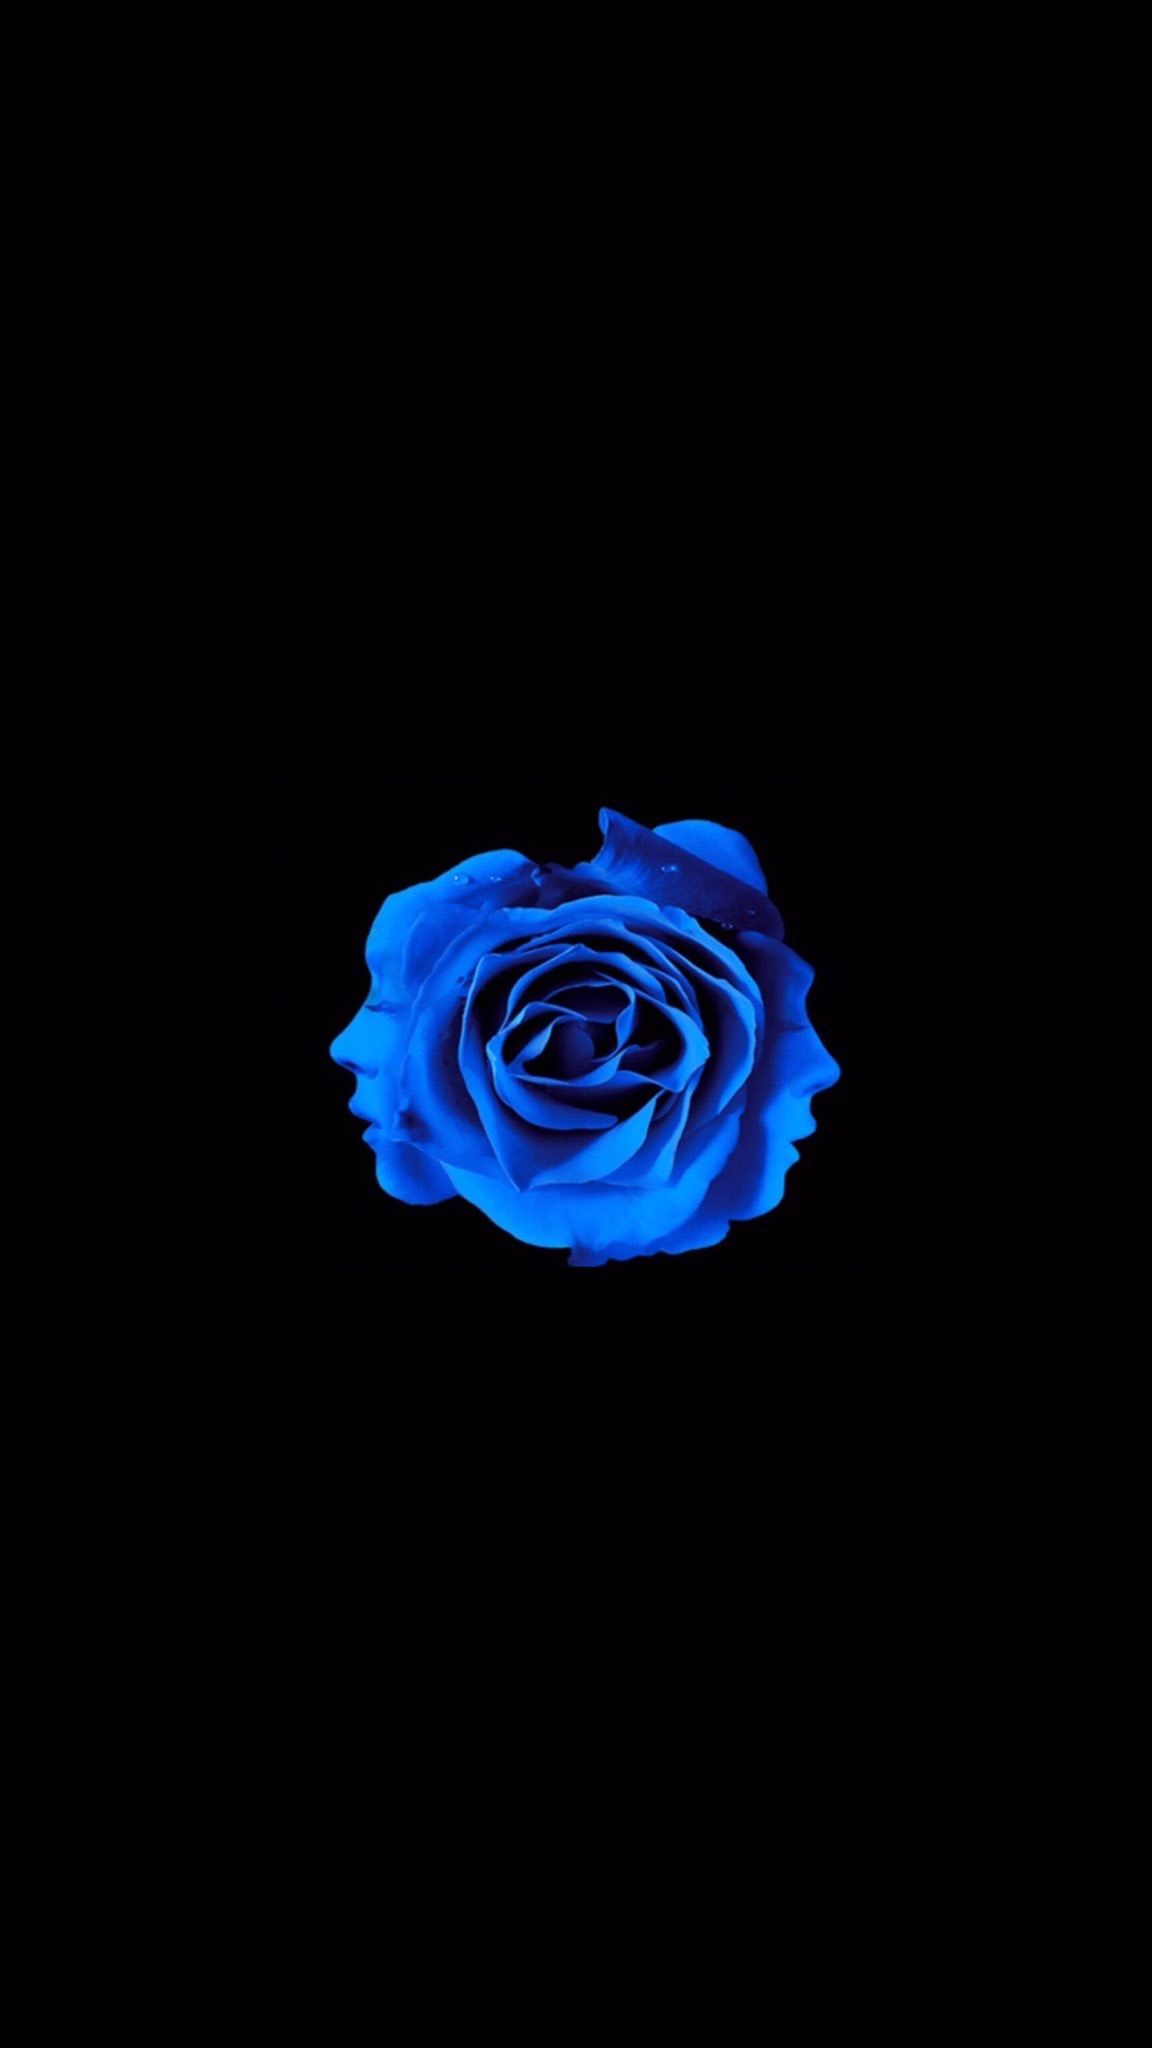 A blue rose on black background - Roses